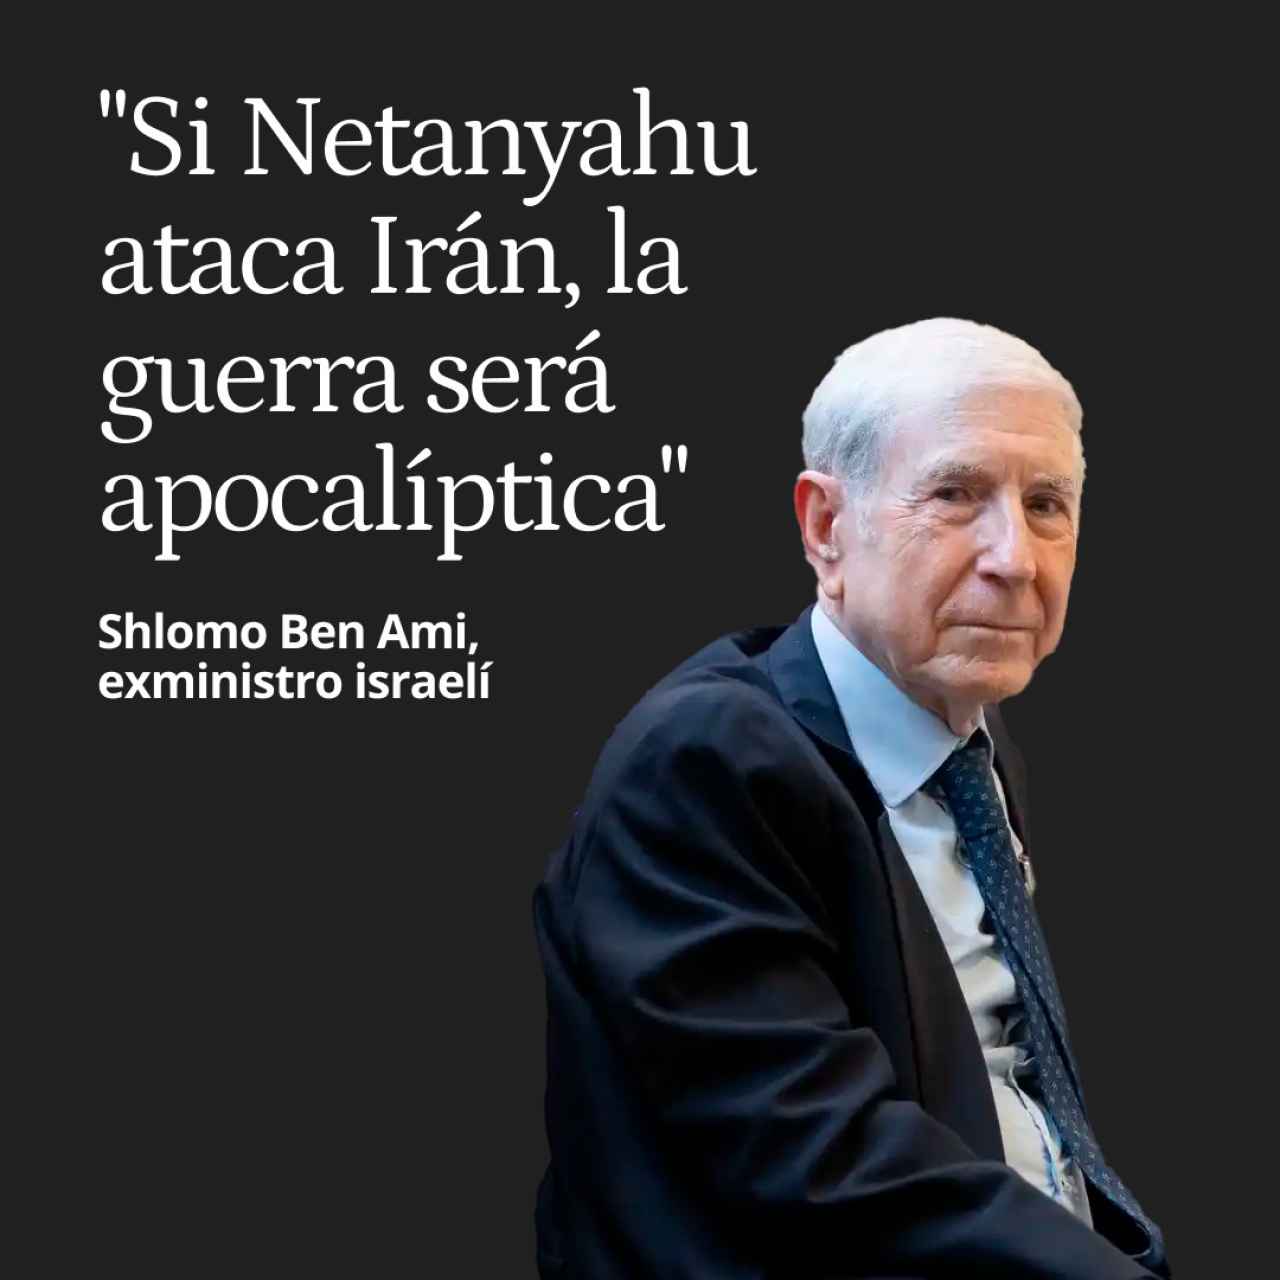 Shlomo Ben Ami, exministro israelí: "Si Netanyahu ataca Irán, la guerra será apocalíptica"